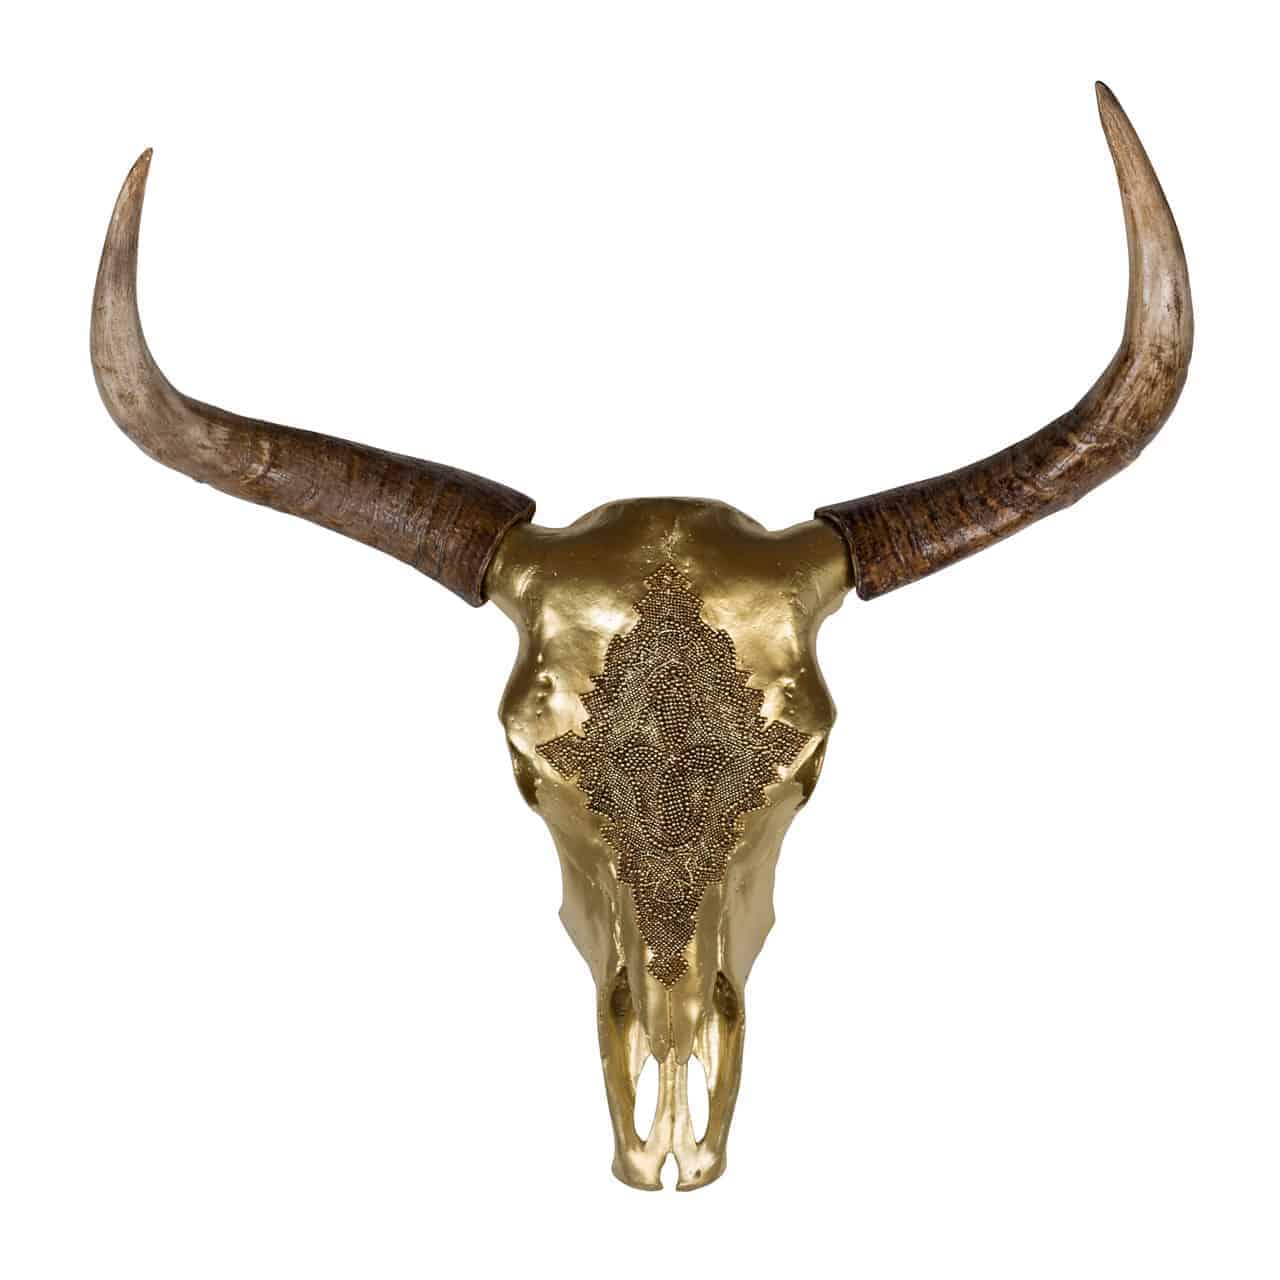 0ac-0005richmond; Wnnddeko- Skelett eines Bisonschädels in gold mit spitzen Hörnern naturfarben .